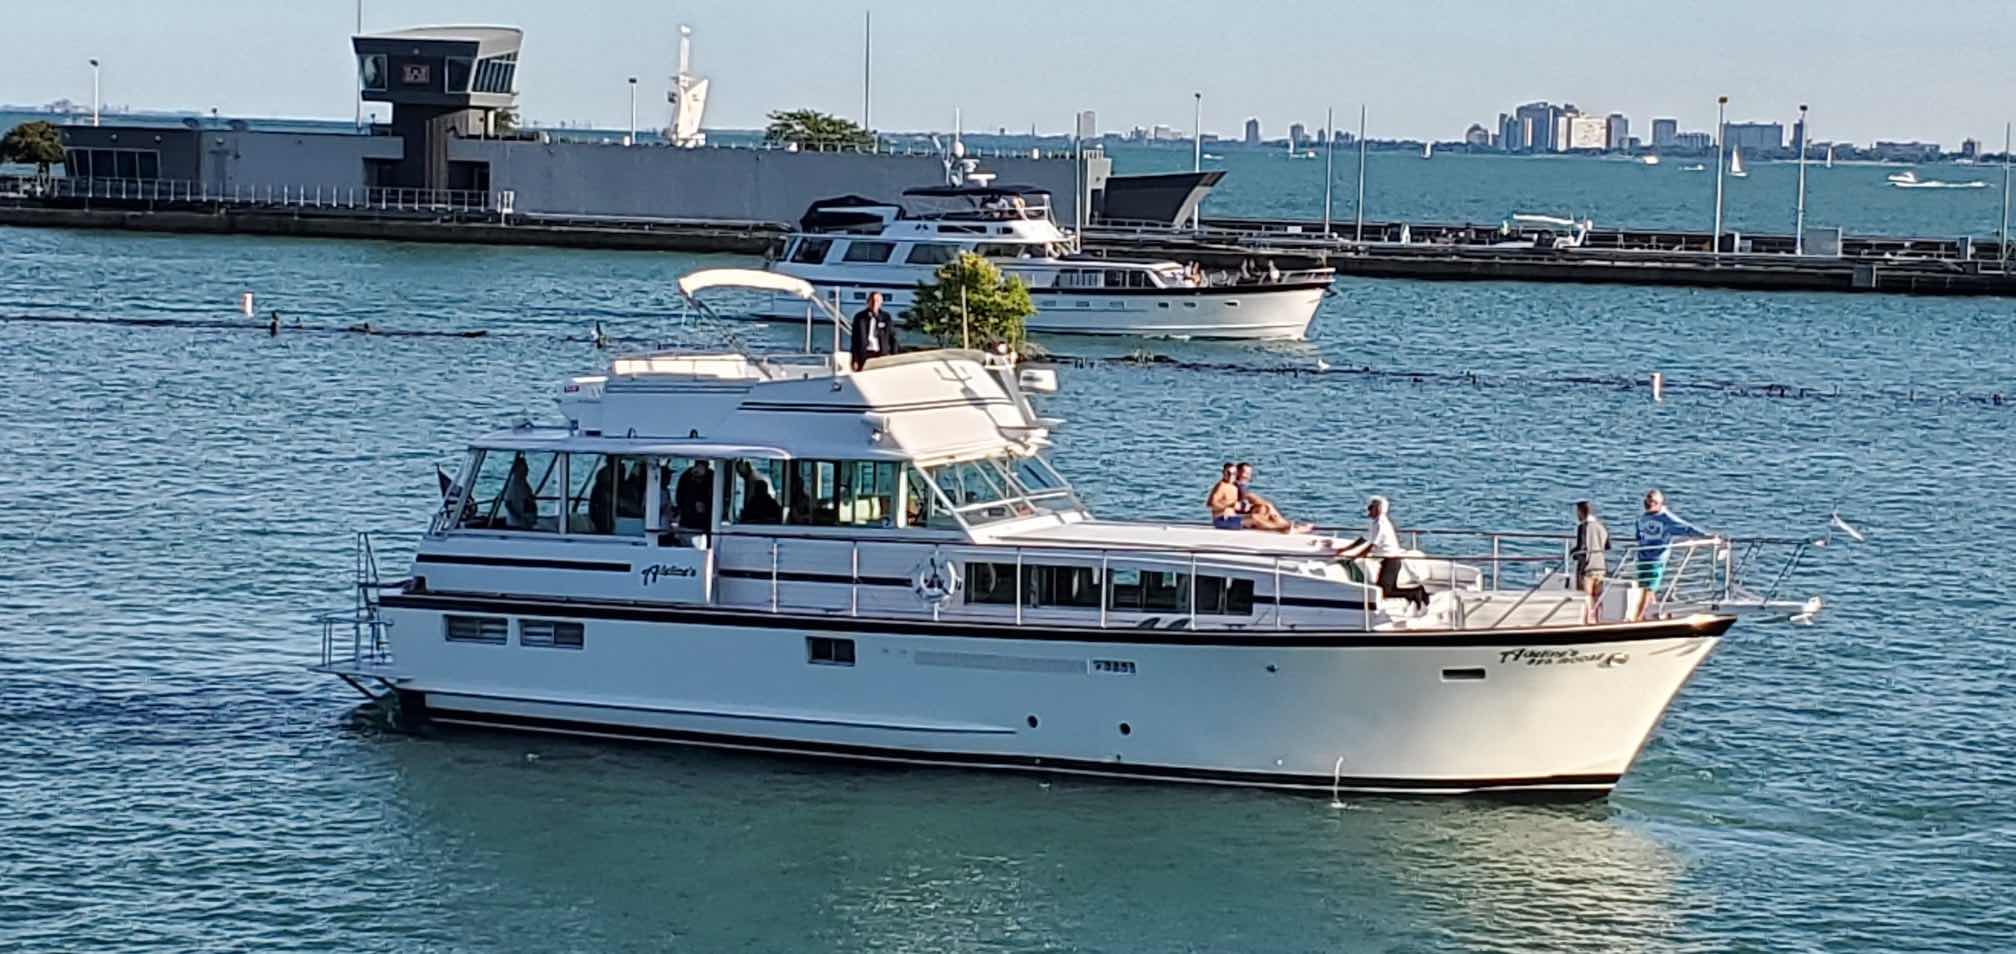 biggest yacht in chicago